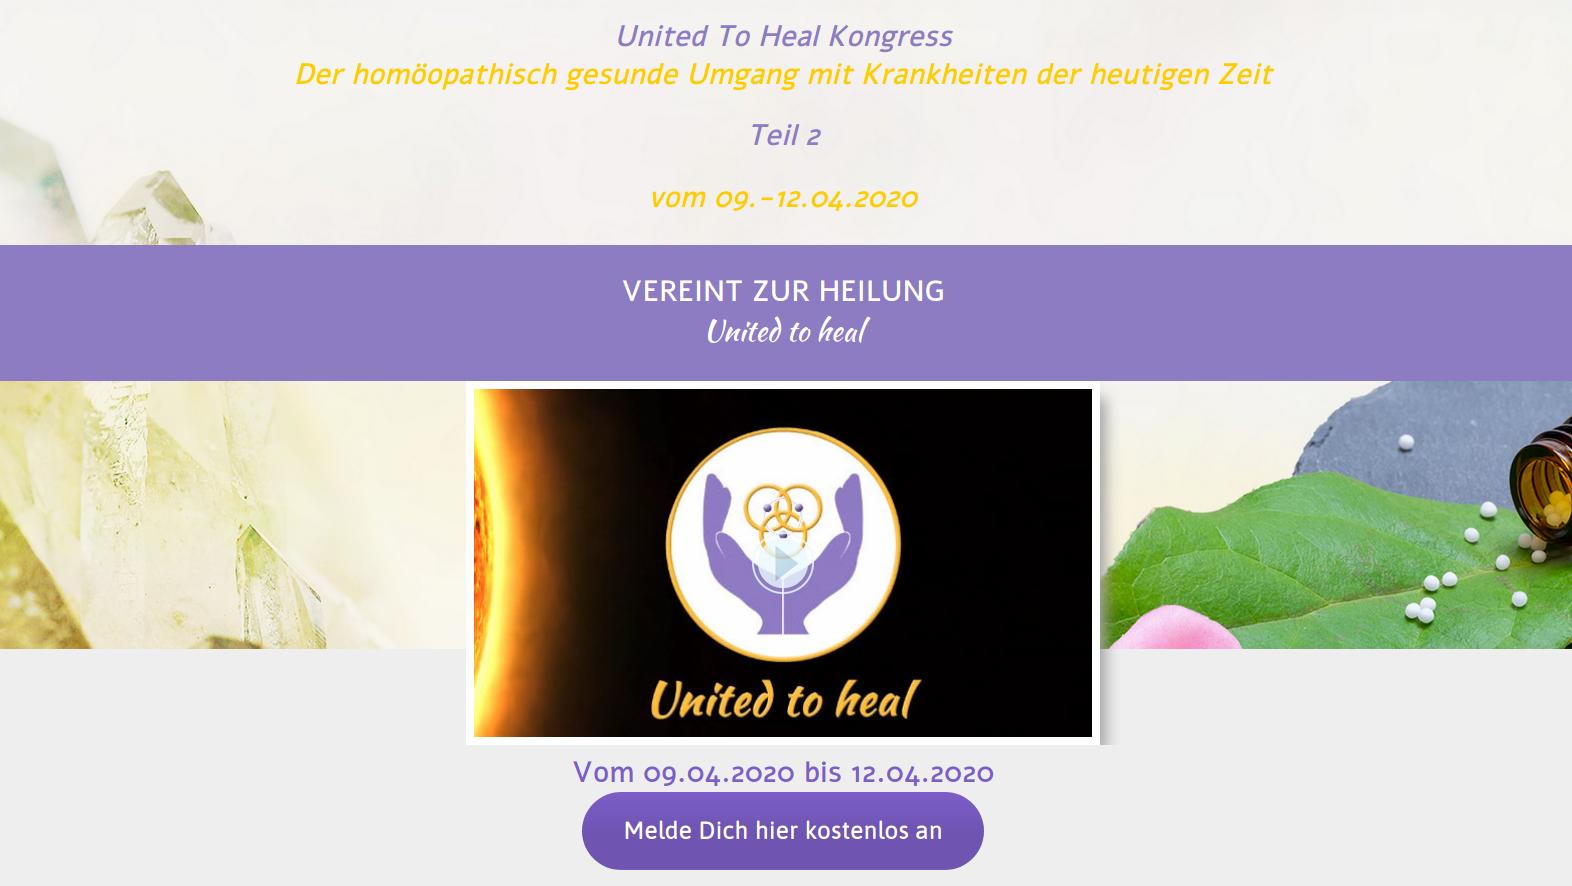 Hier geht's zum kostenlosen United To Heal Kongress Teil 2